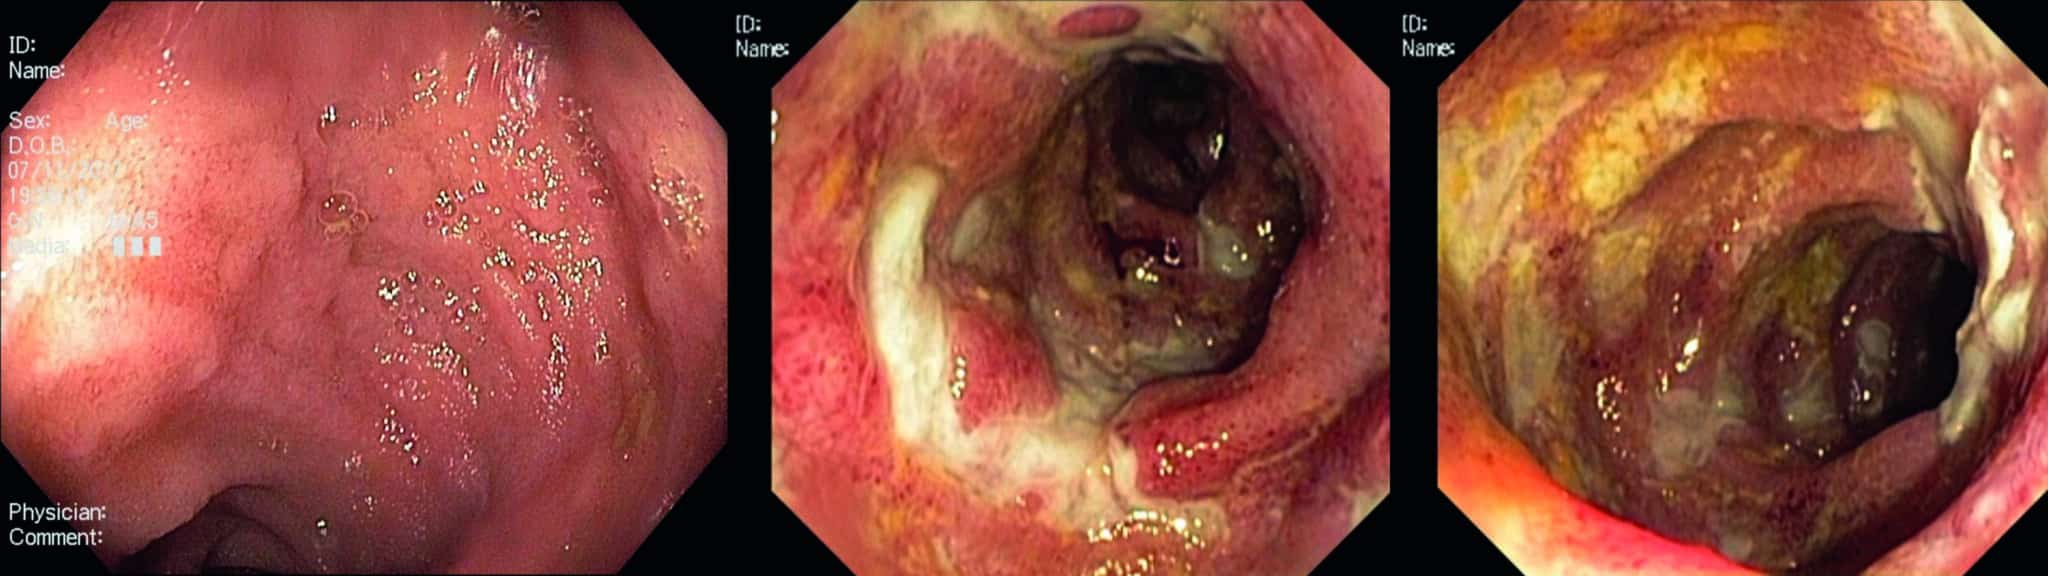 Endoscopische afbeeldingen : A. Normaal terminaal ileum. B en C. Confluerende ulcera in het terminale ileum bij M Crohn